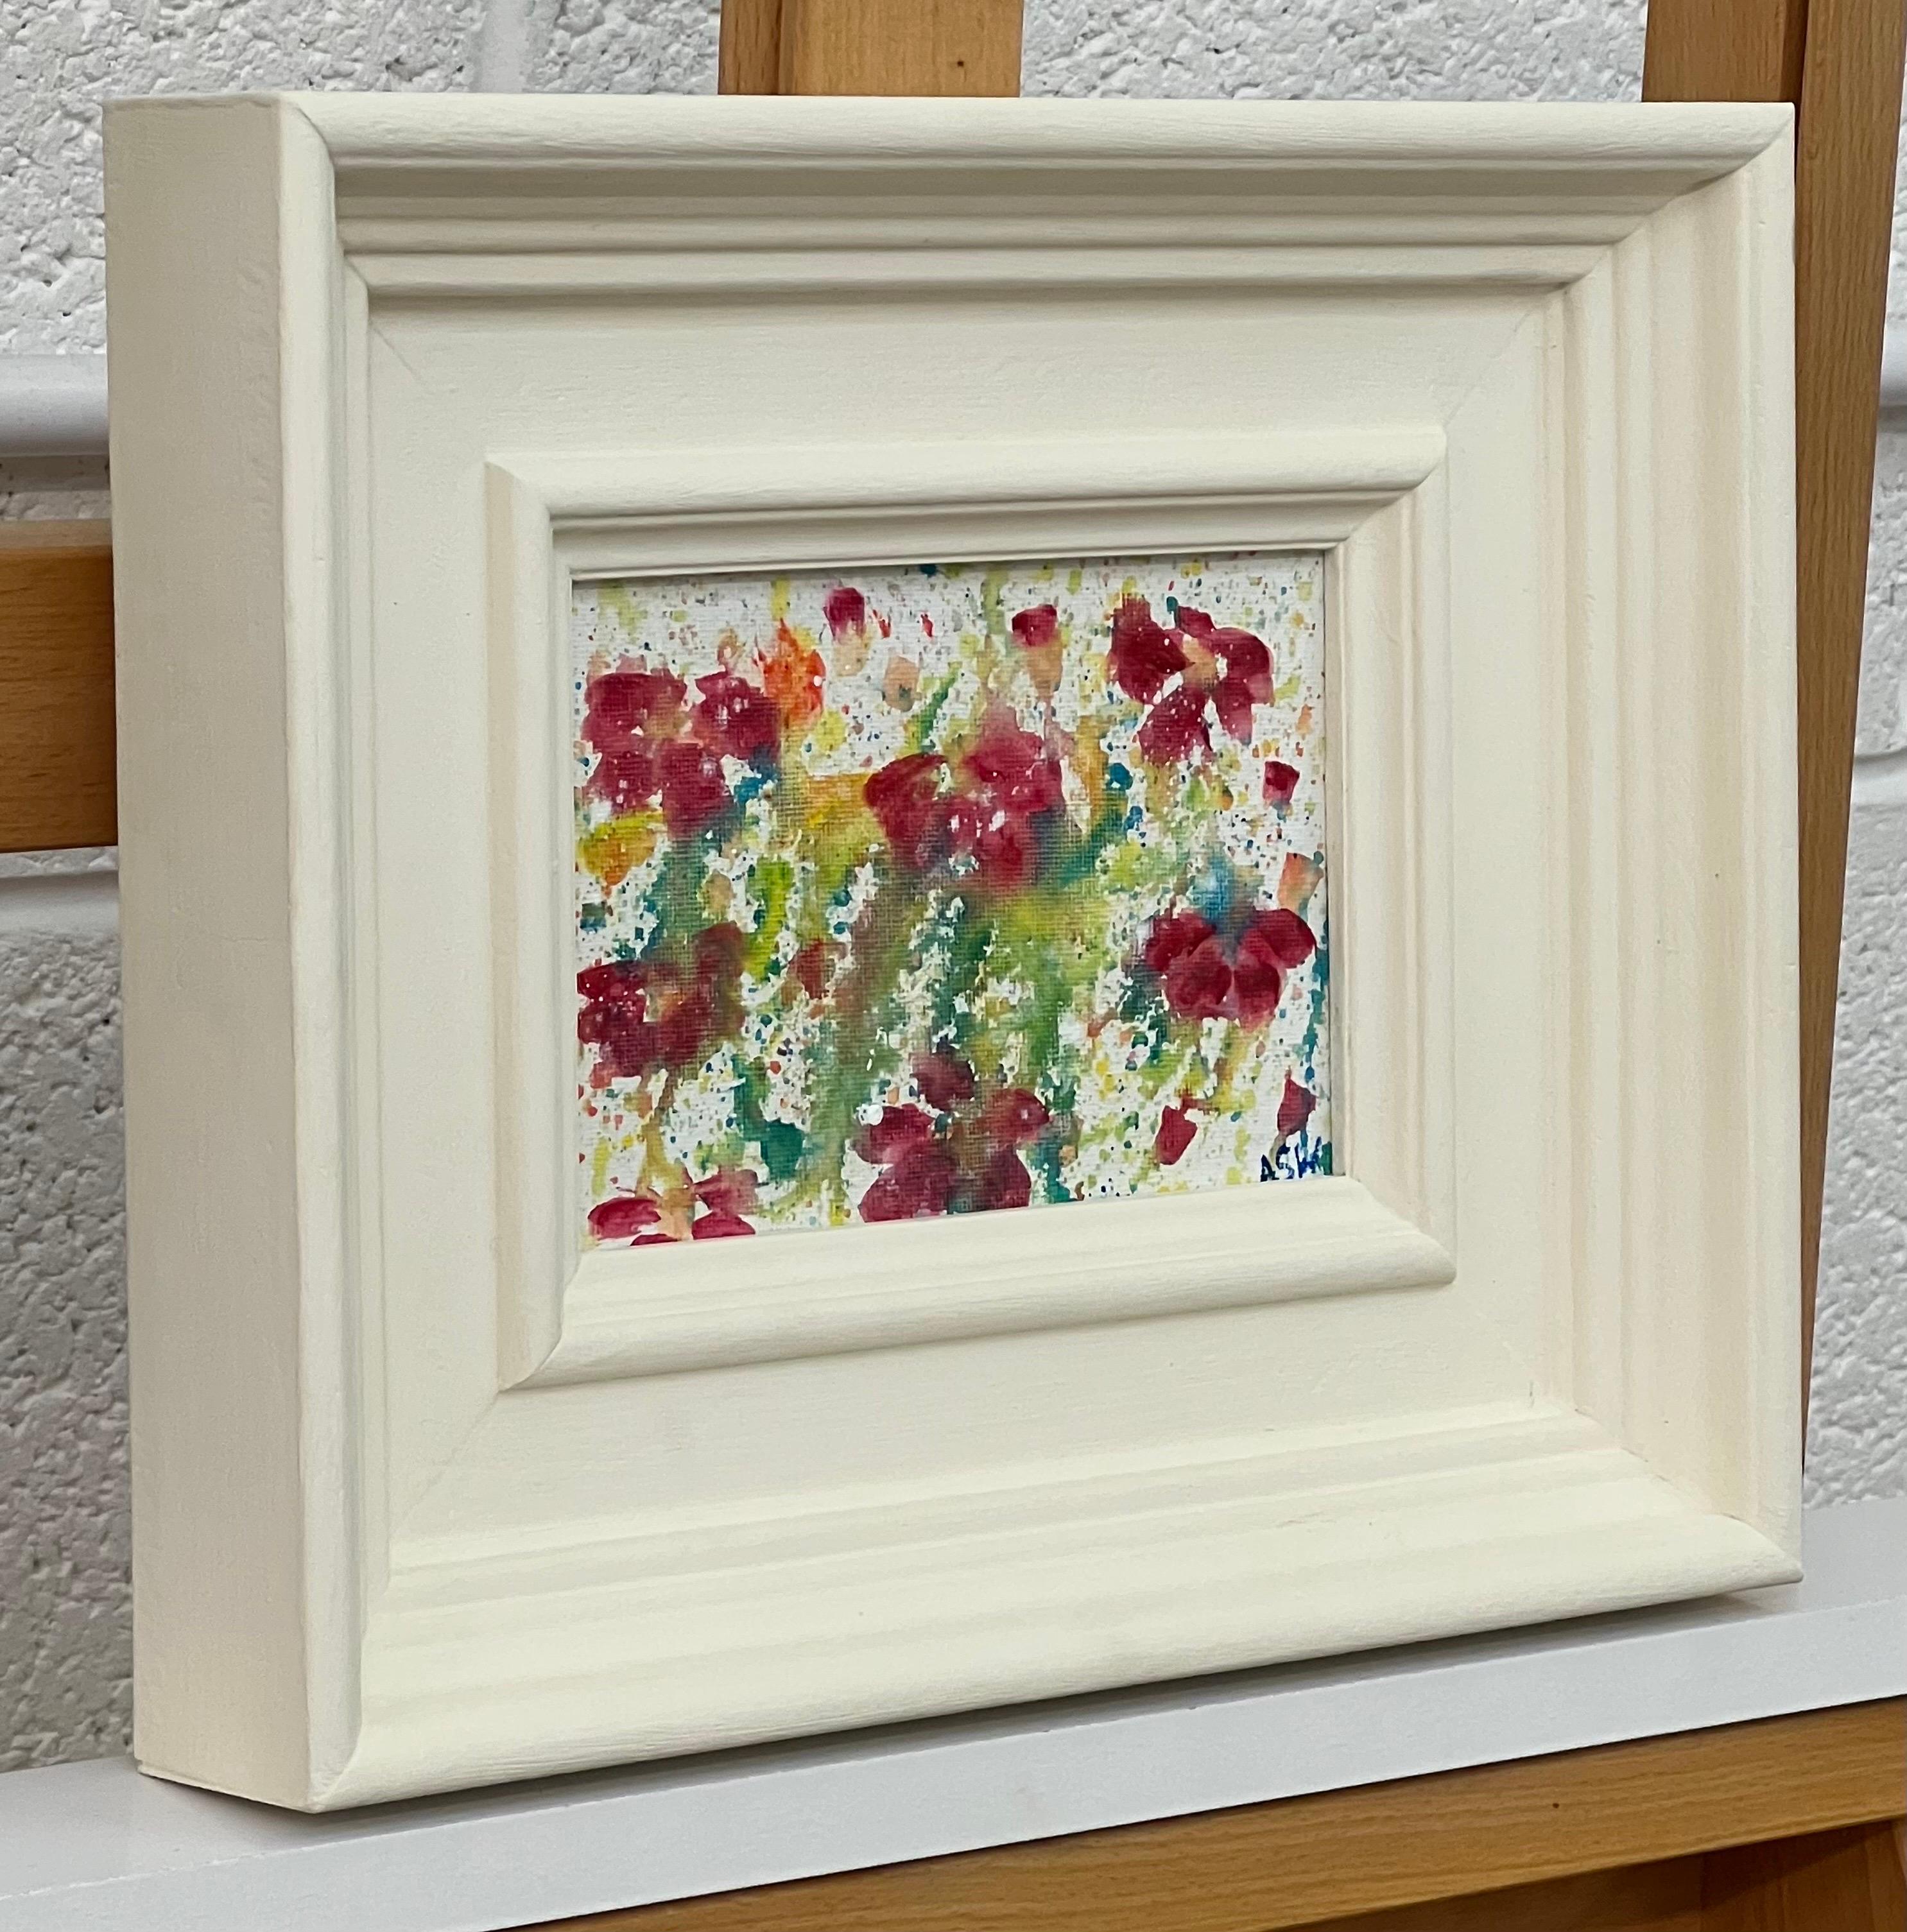 Étude de fleurs abstraites miniatures sur toile blanche d'un artiste britannique contemporain - Painting de Angela Wakefield